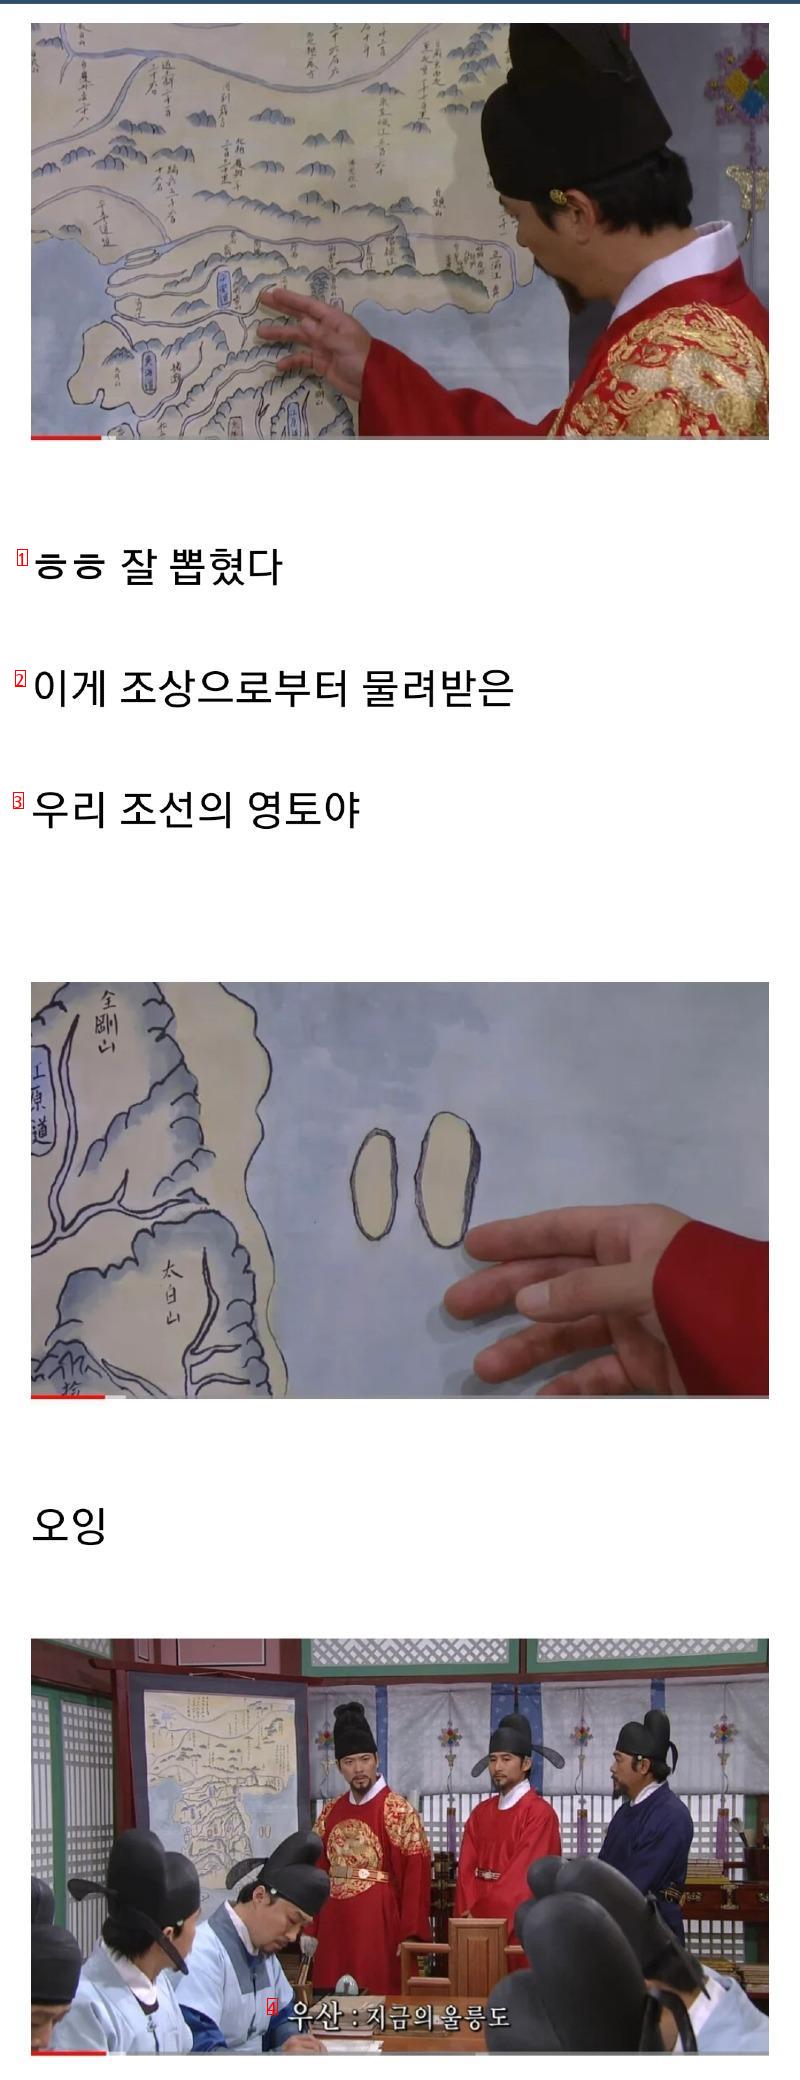 独島が韓国の領土である証拠を一つ作った方